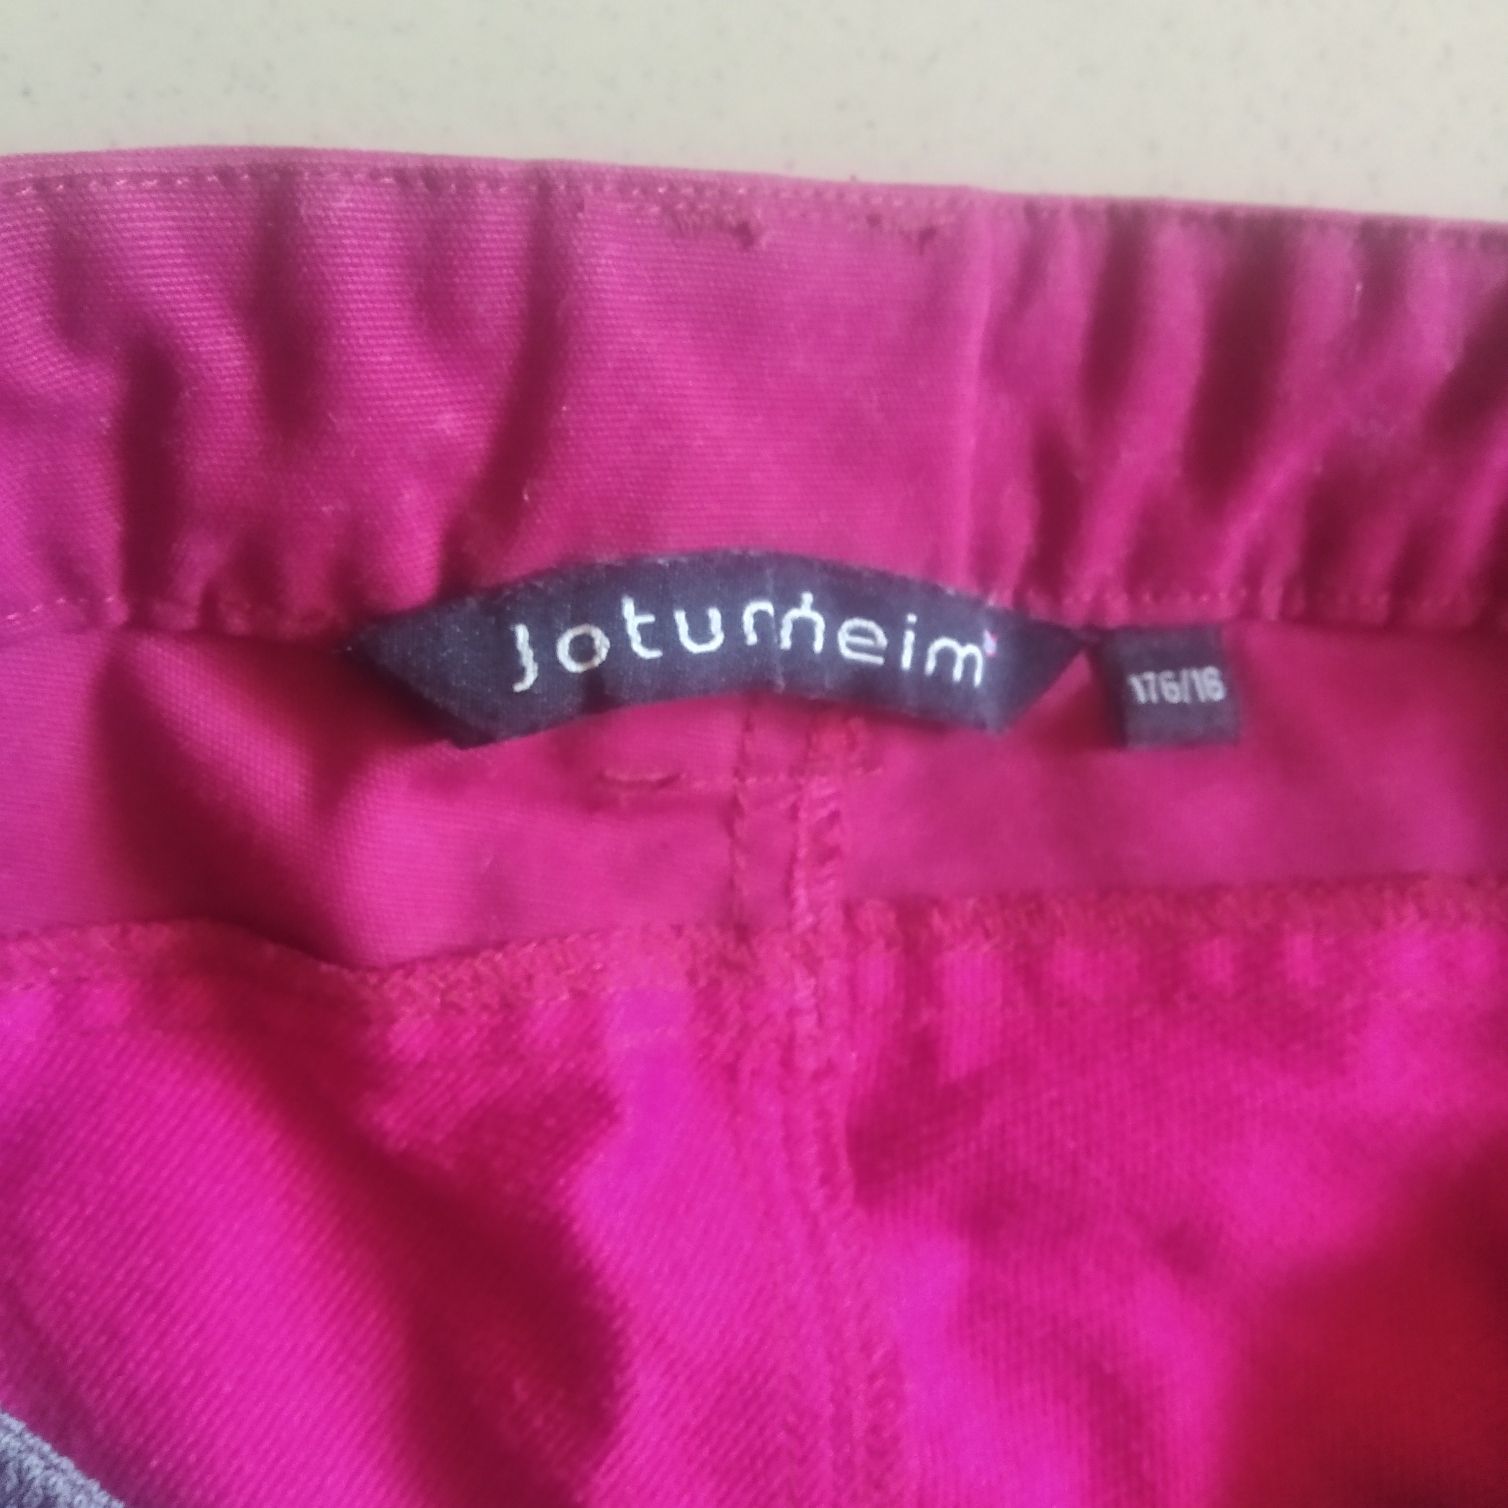 Spodnie trekkingowe Jotunheim dziewczęce na 176 cm lub damskaS/M